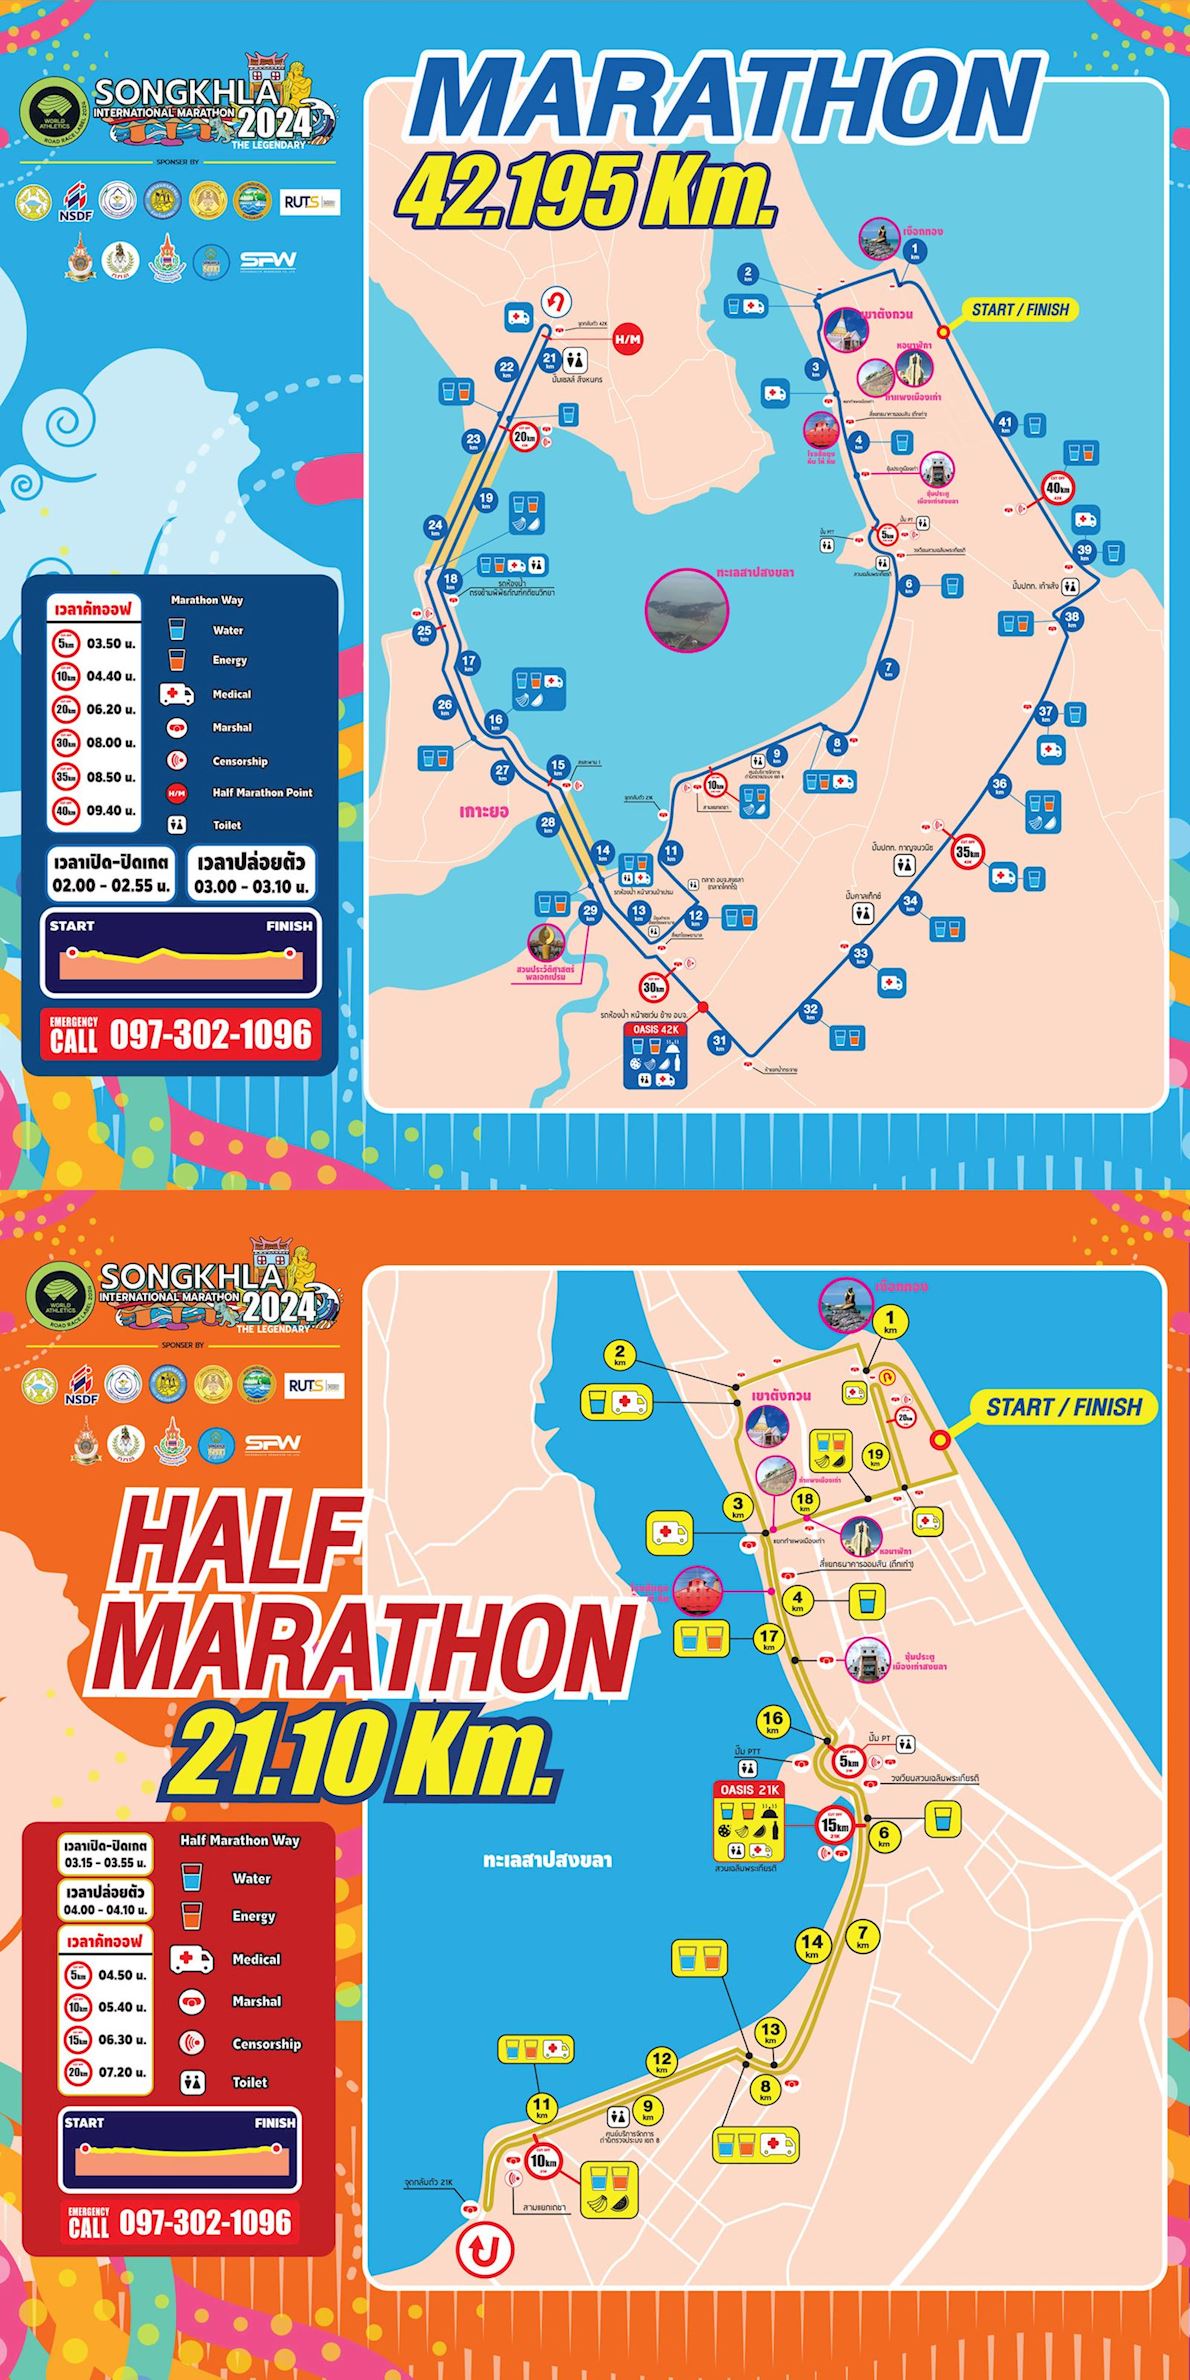 Songkhla International Marathon Routenkarte